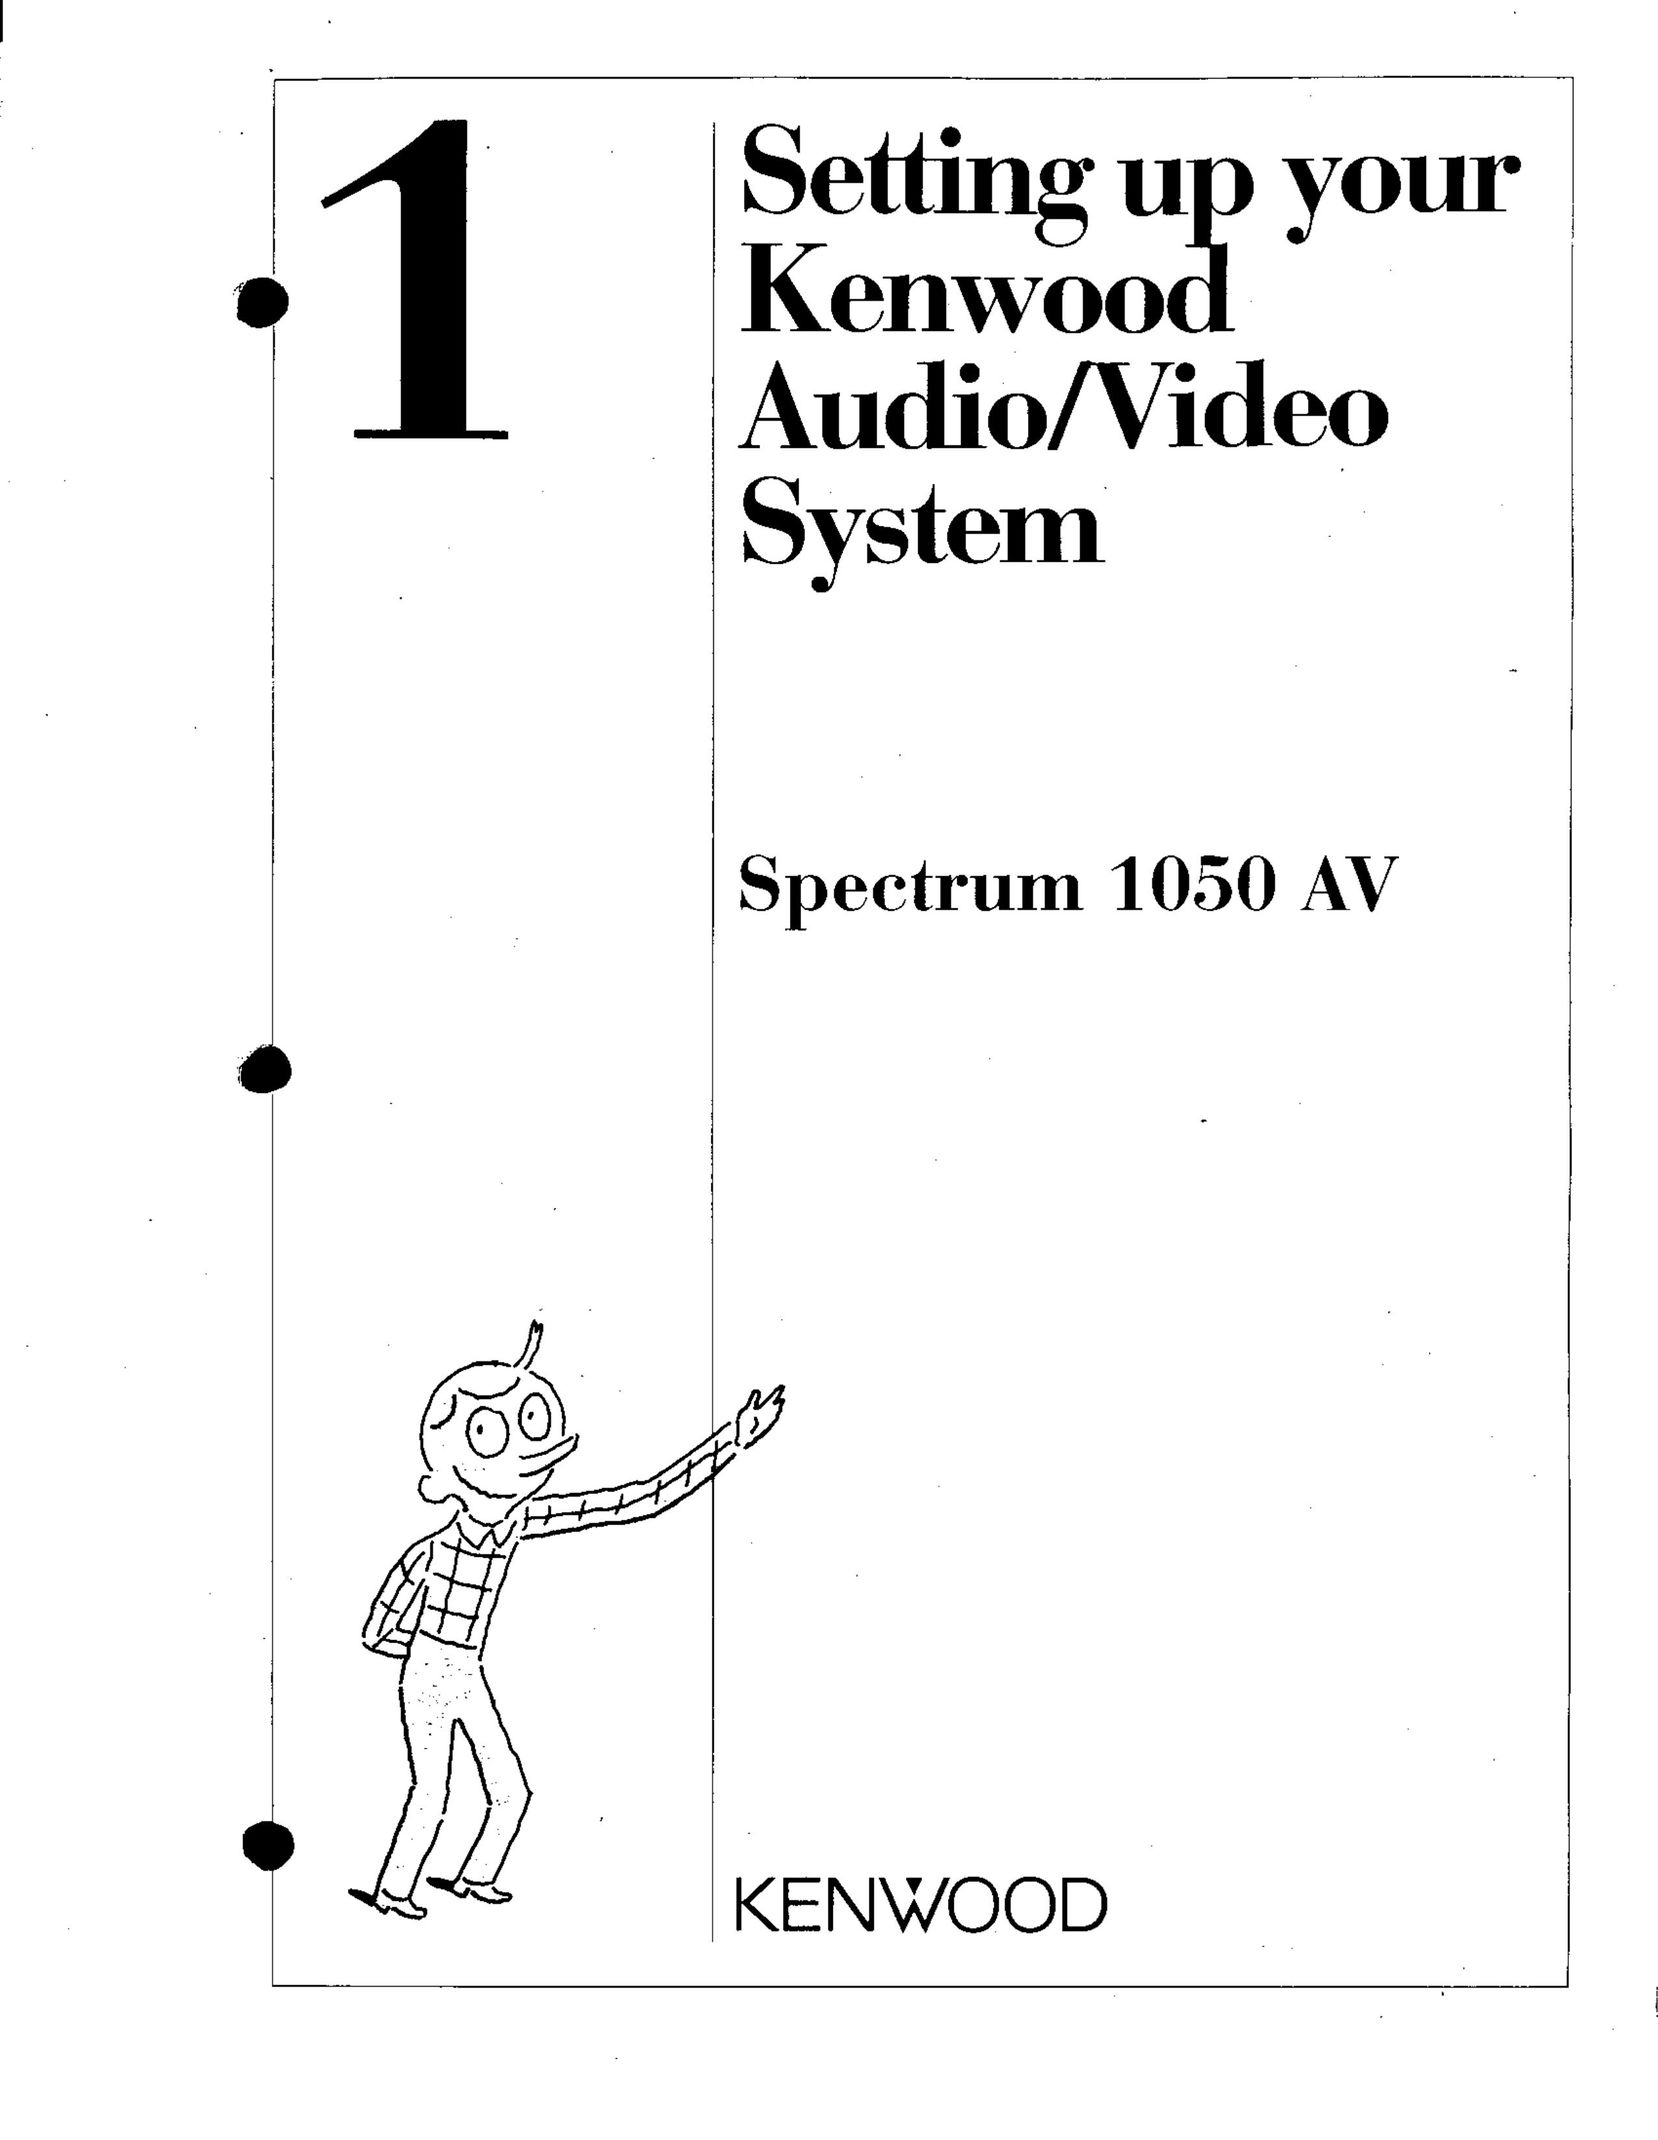 Kenwood 1050 AV DVR User Manual